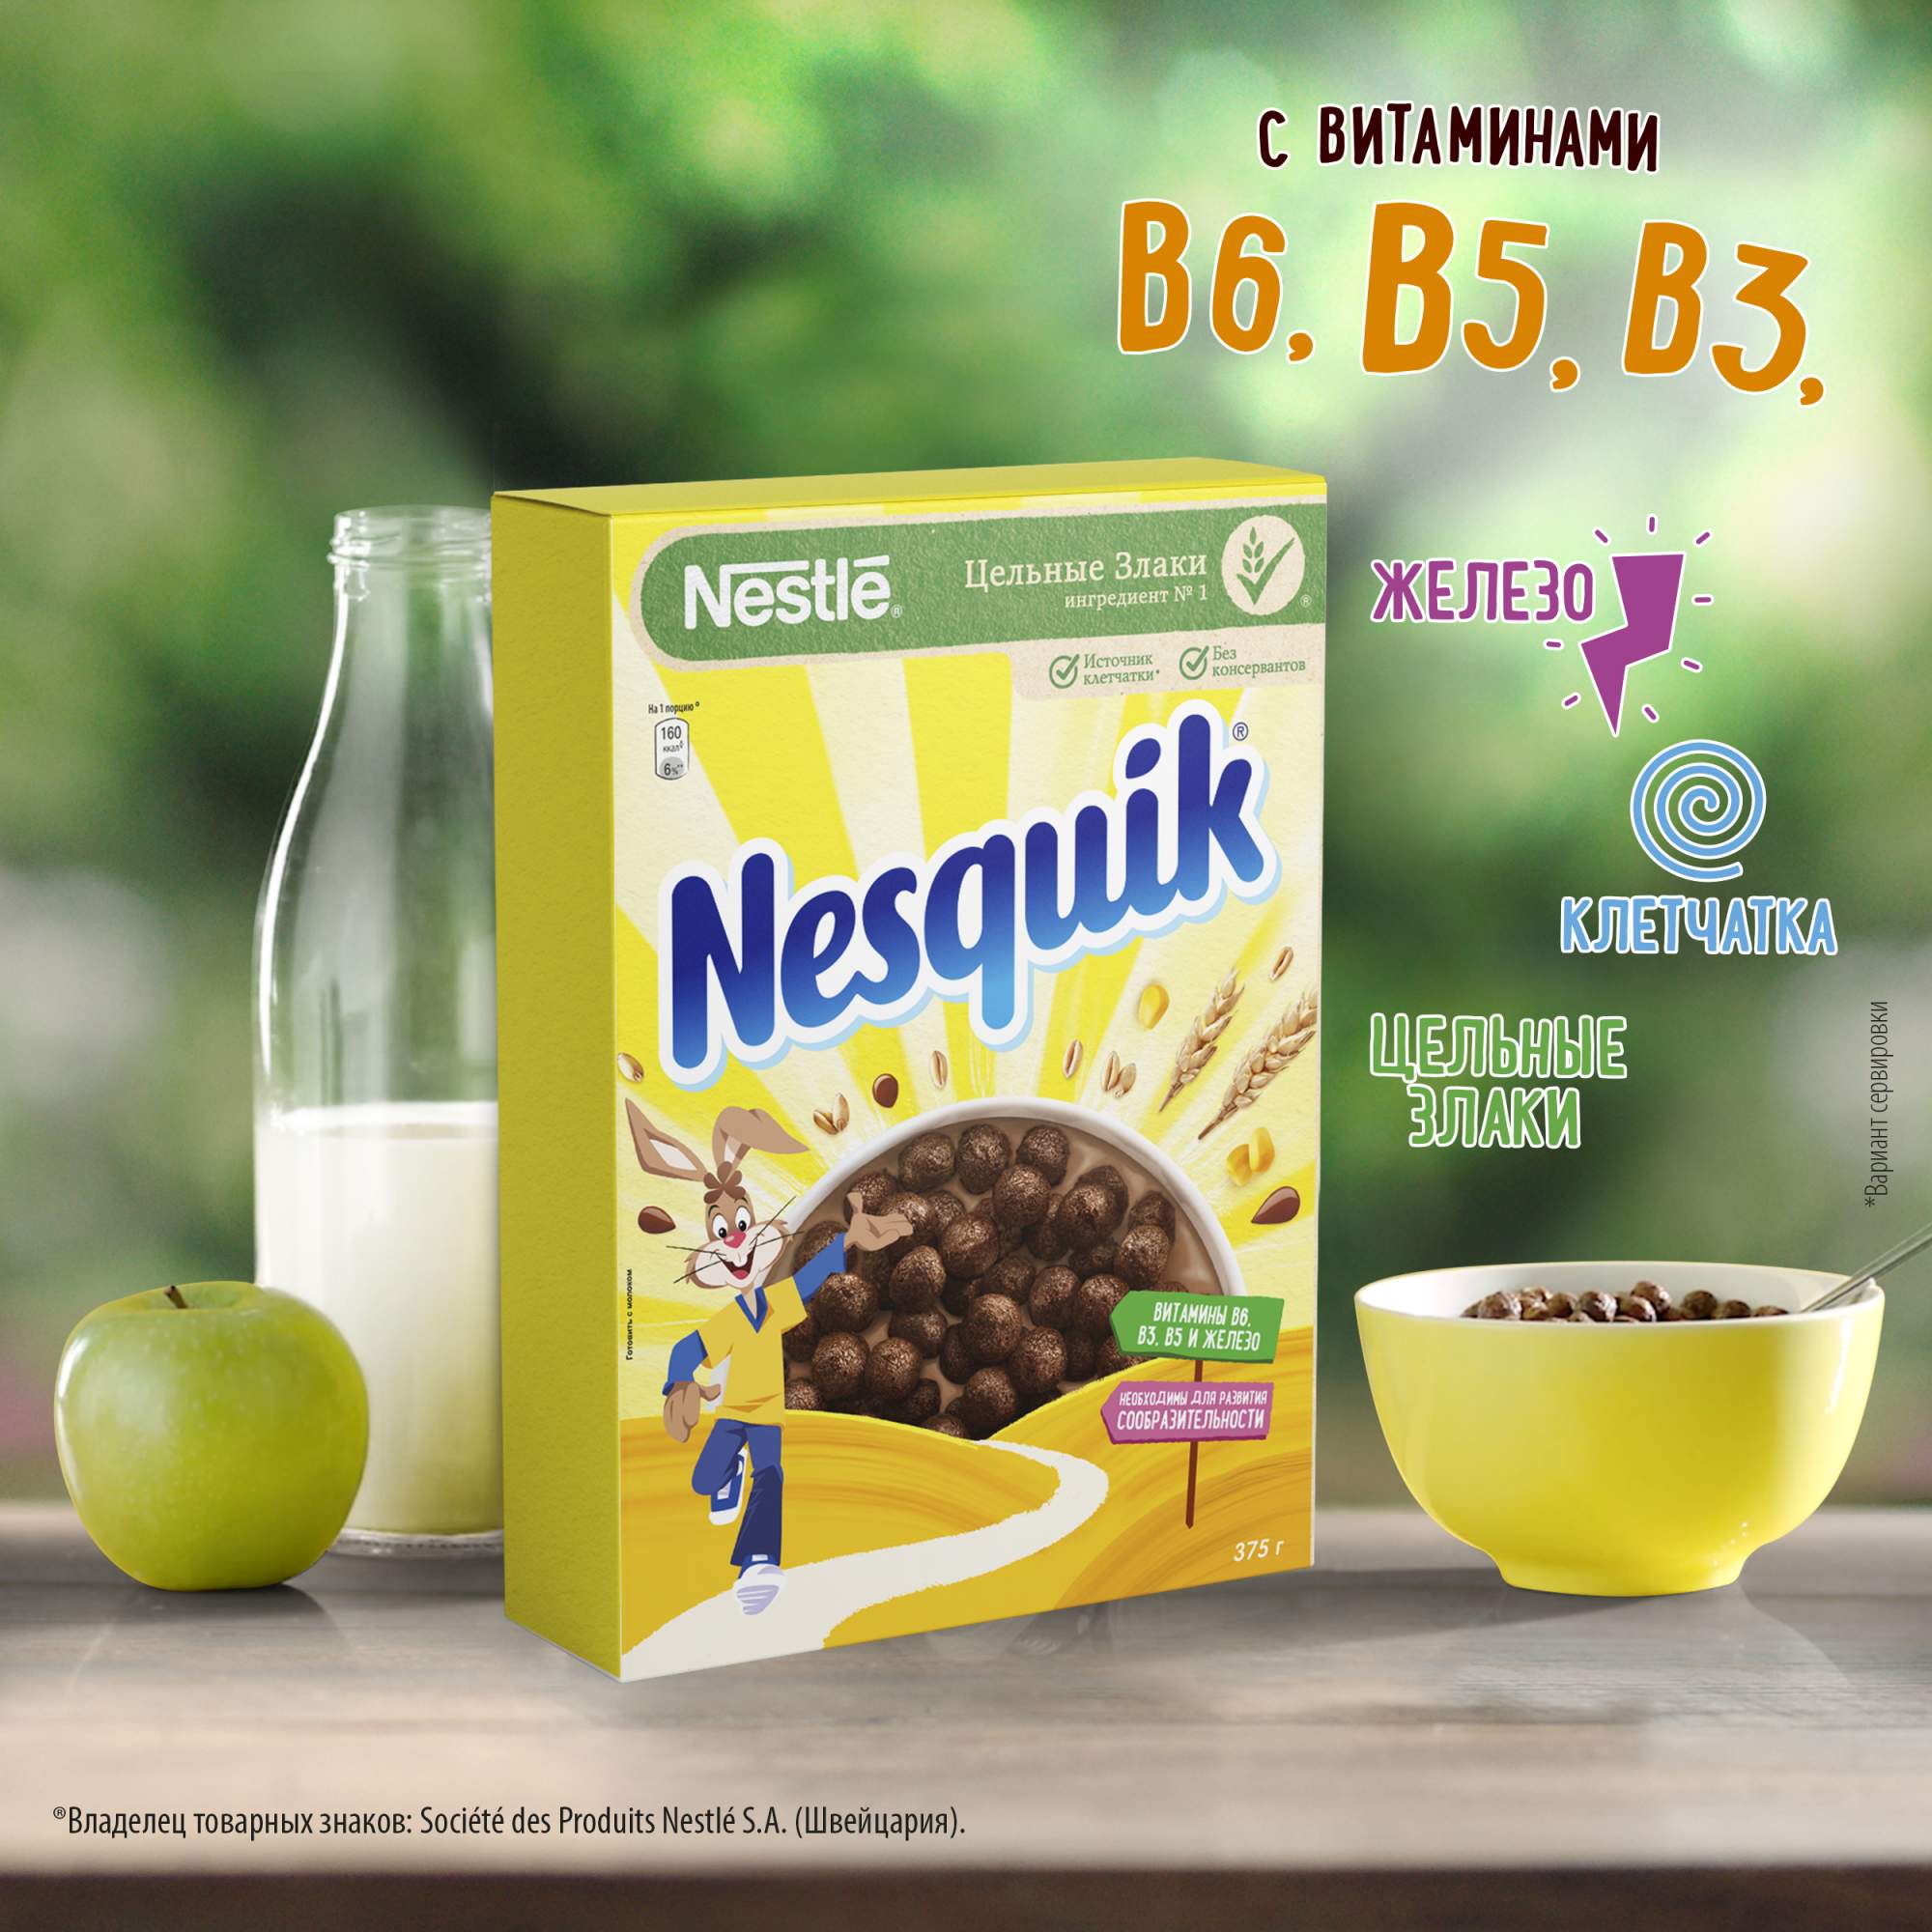 Готовый завтрак Nesquik шоколадные шарики 375 г